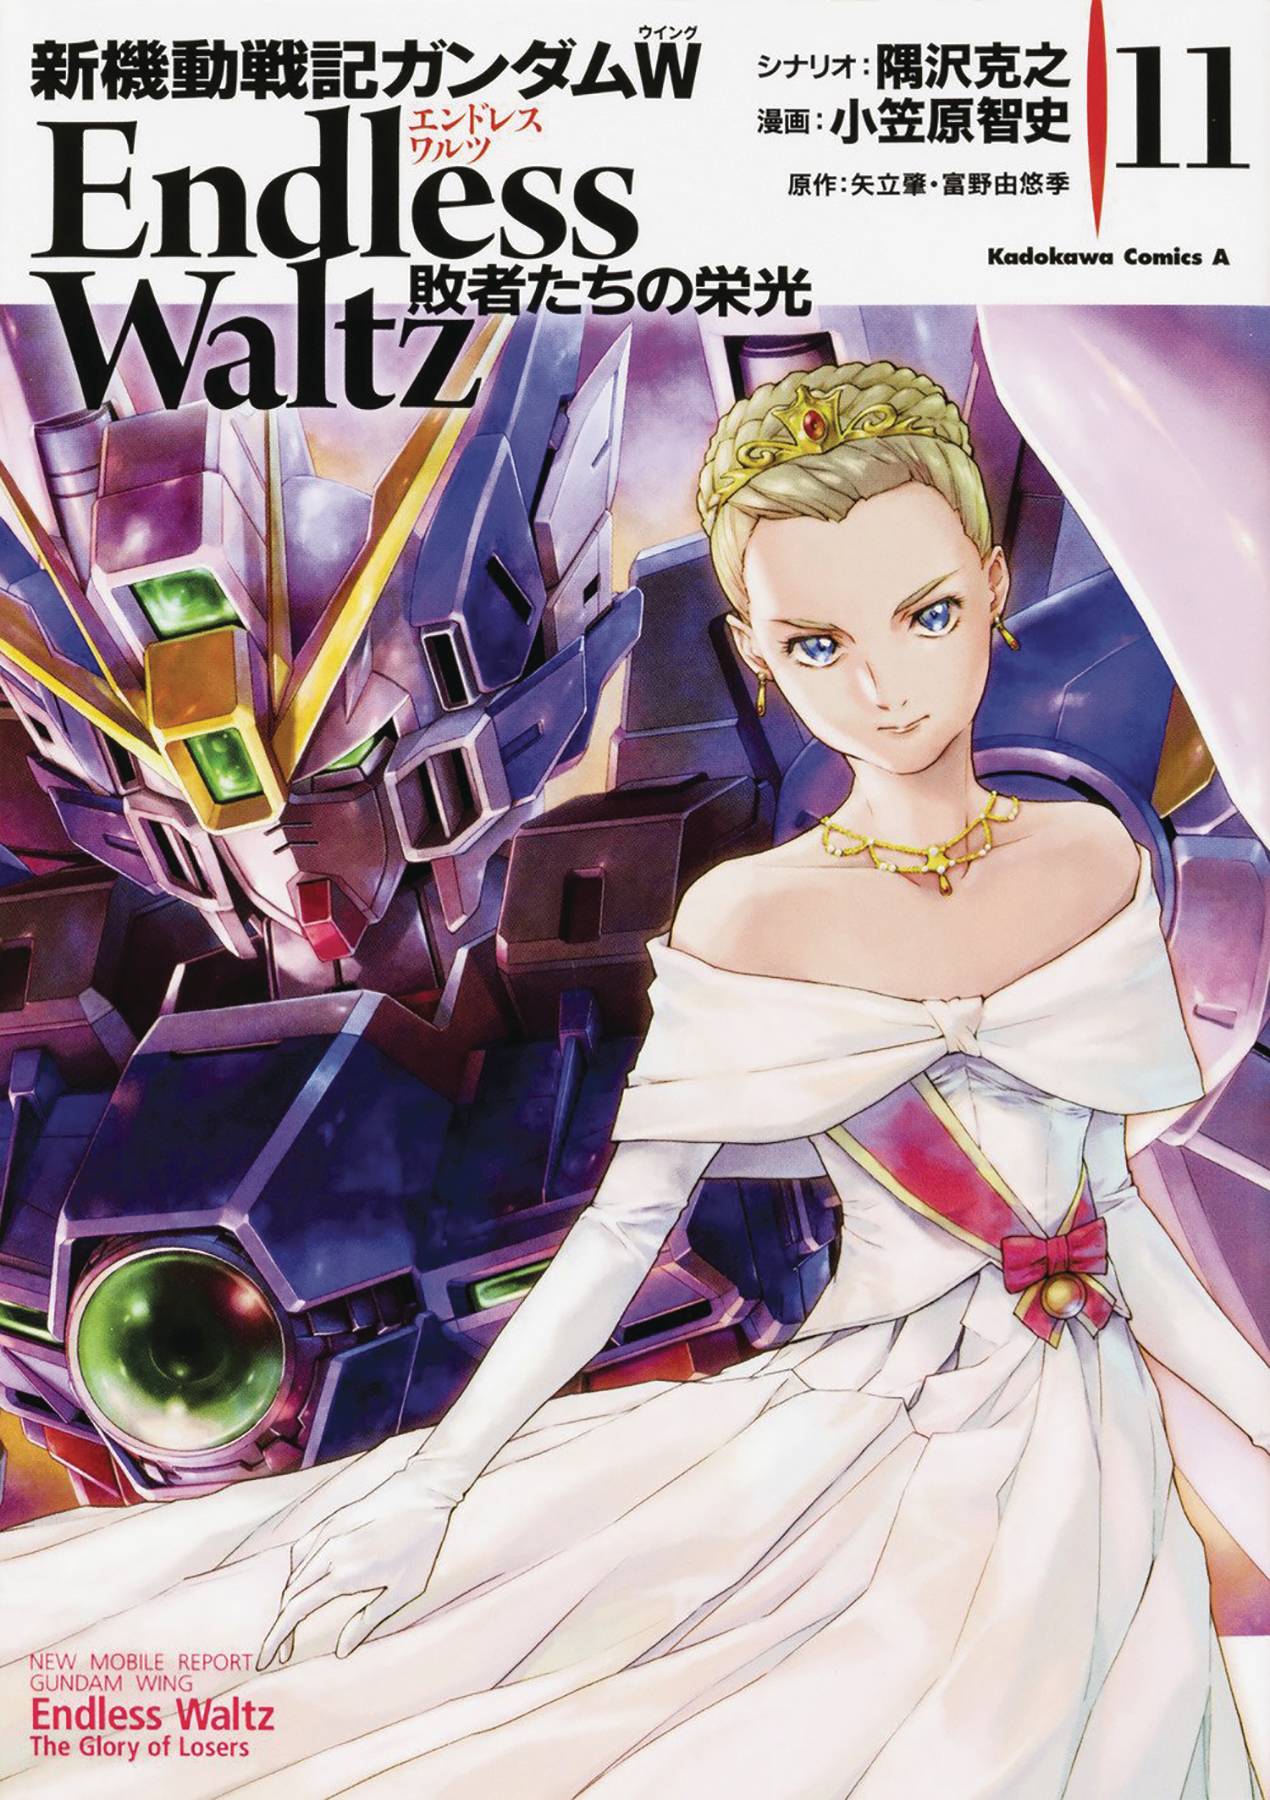 Mobile Suit Gundam Wing Manga Volume 11